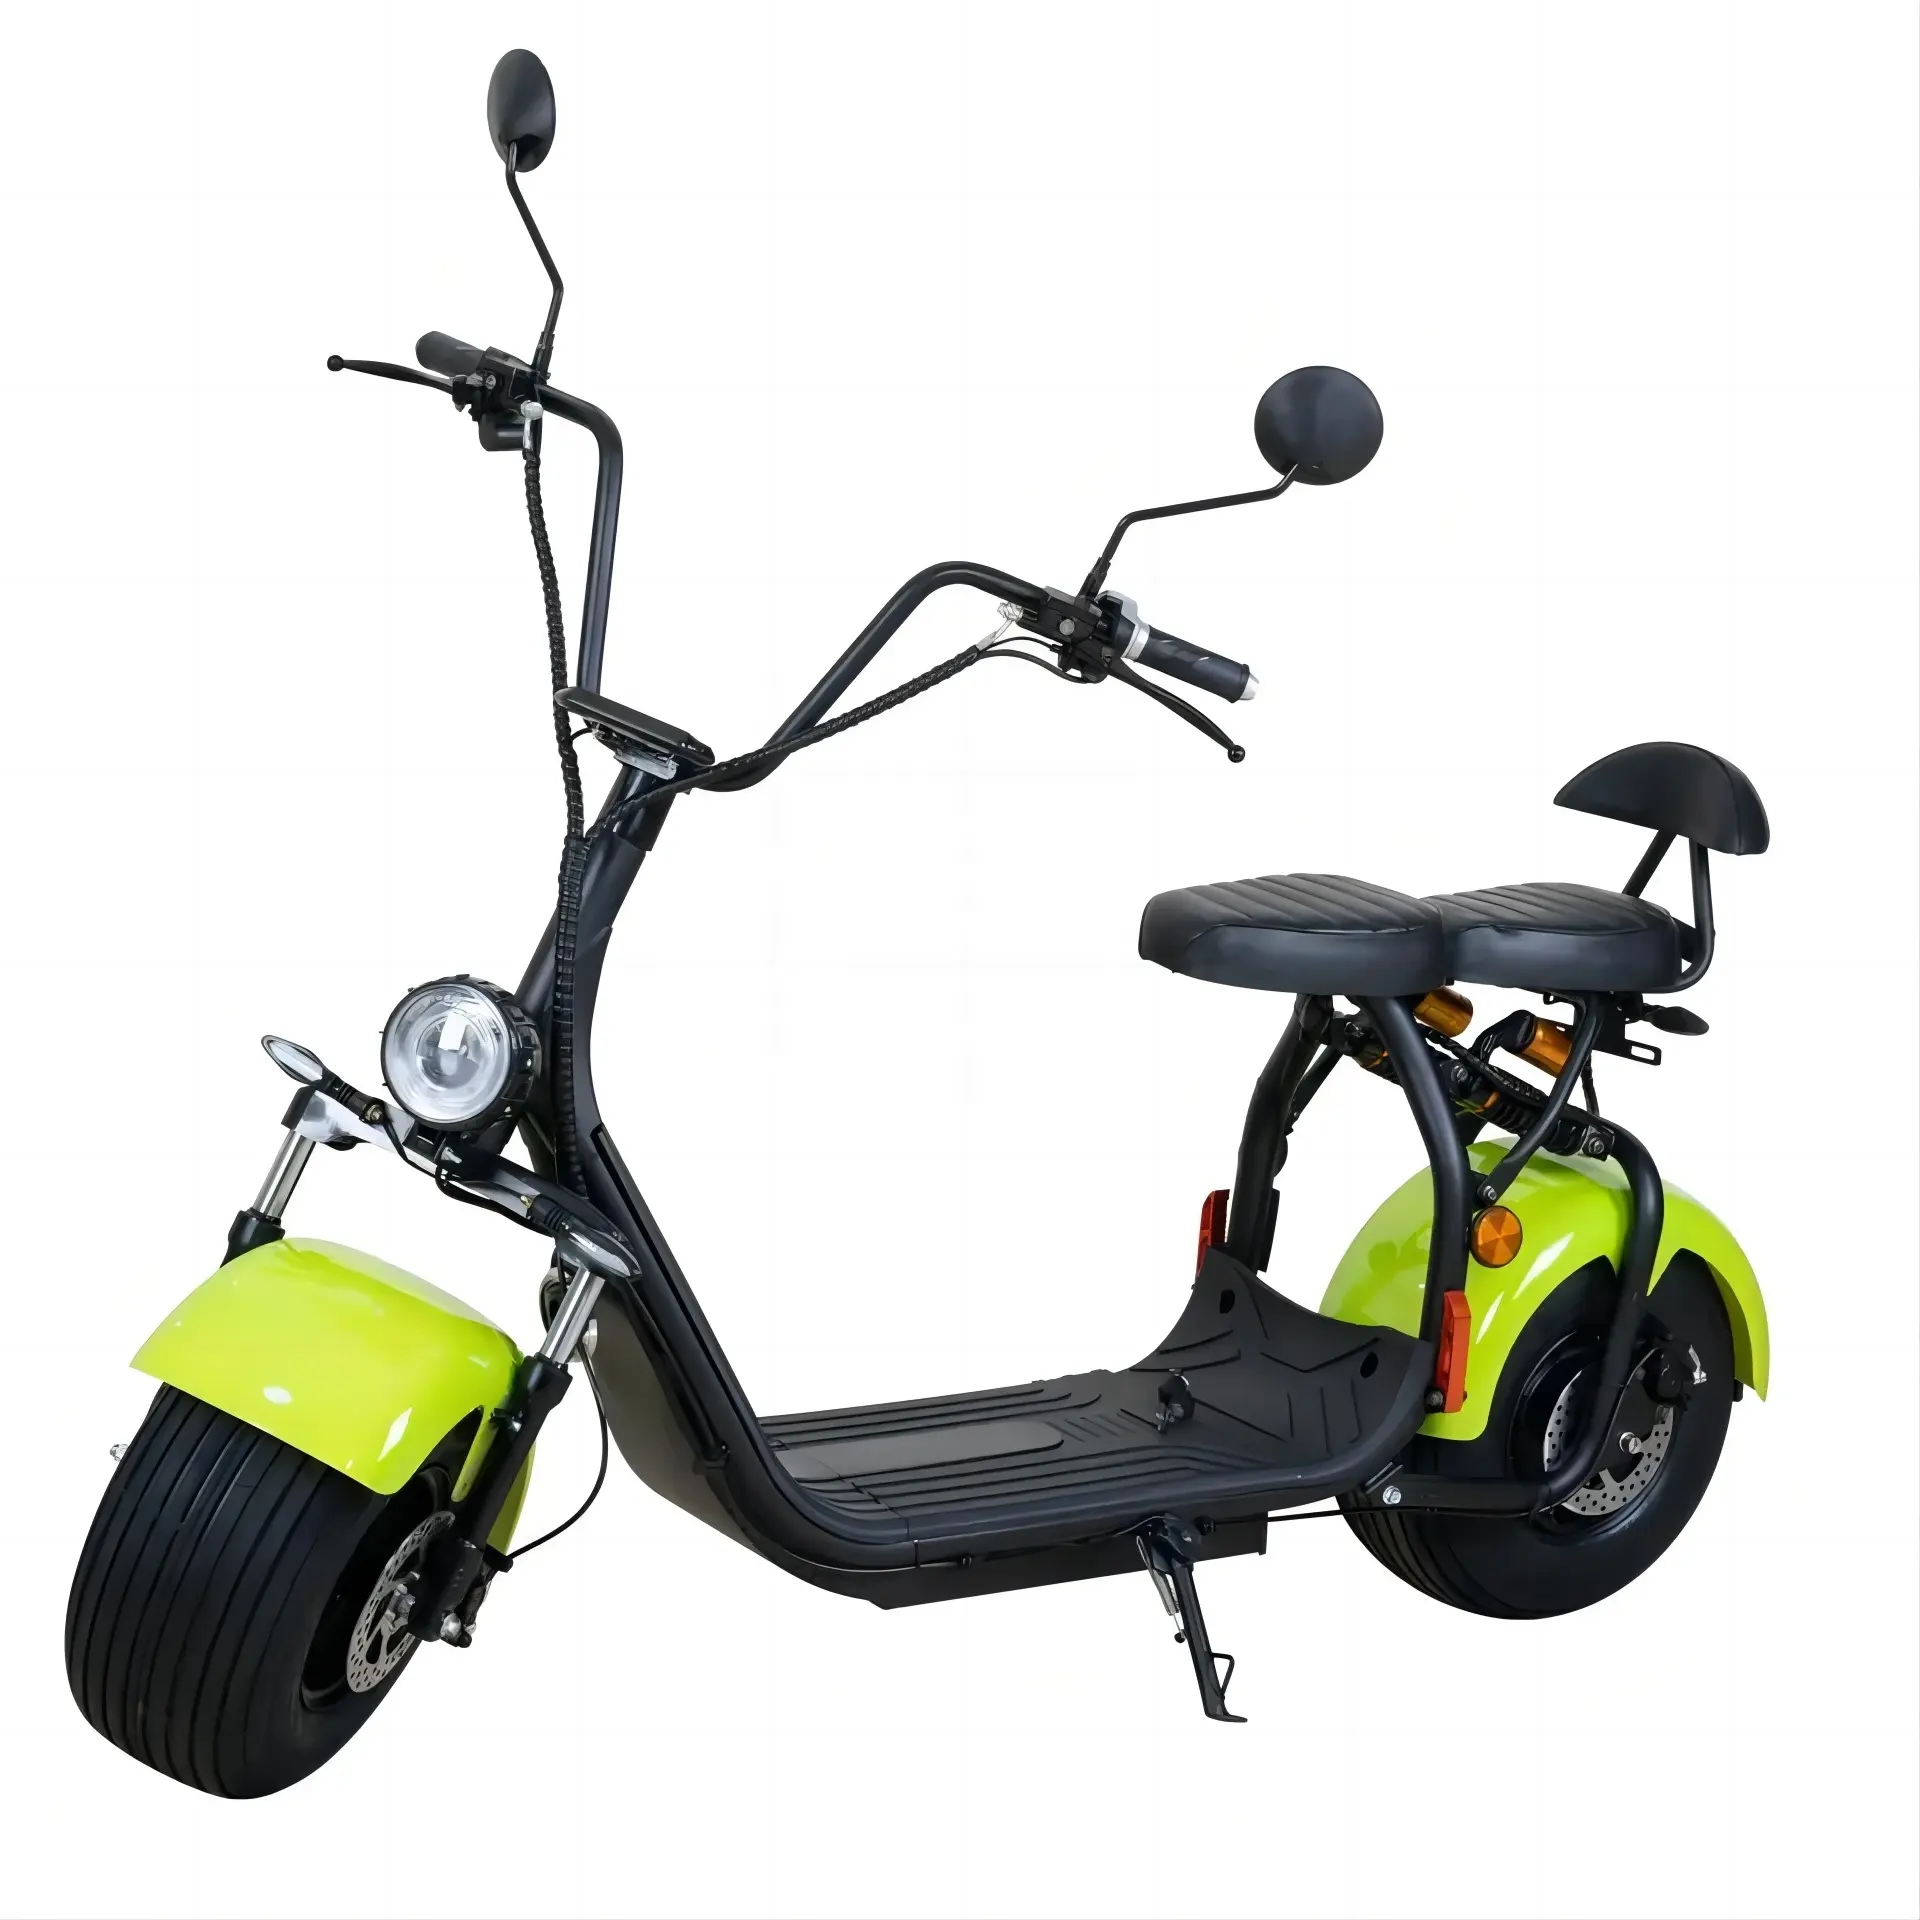 OEM, китайский дешевый мощный Электрический скутер eblike, толстый колесный скутер, COC1500w, 2000 Вт, европейский рынок, smarta, гольф-скутер для взрослых